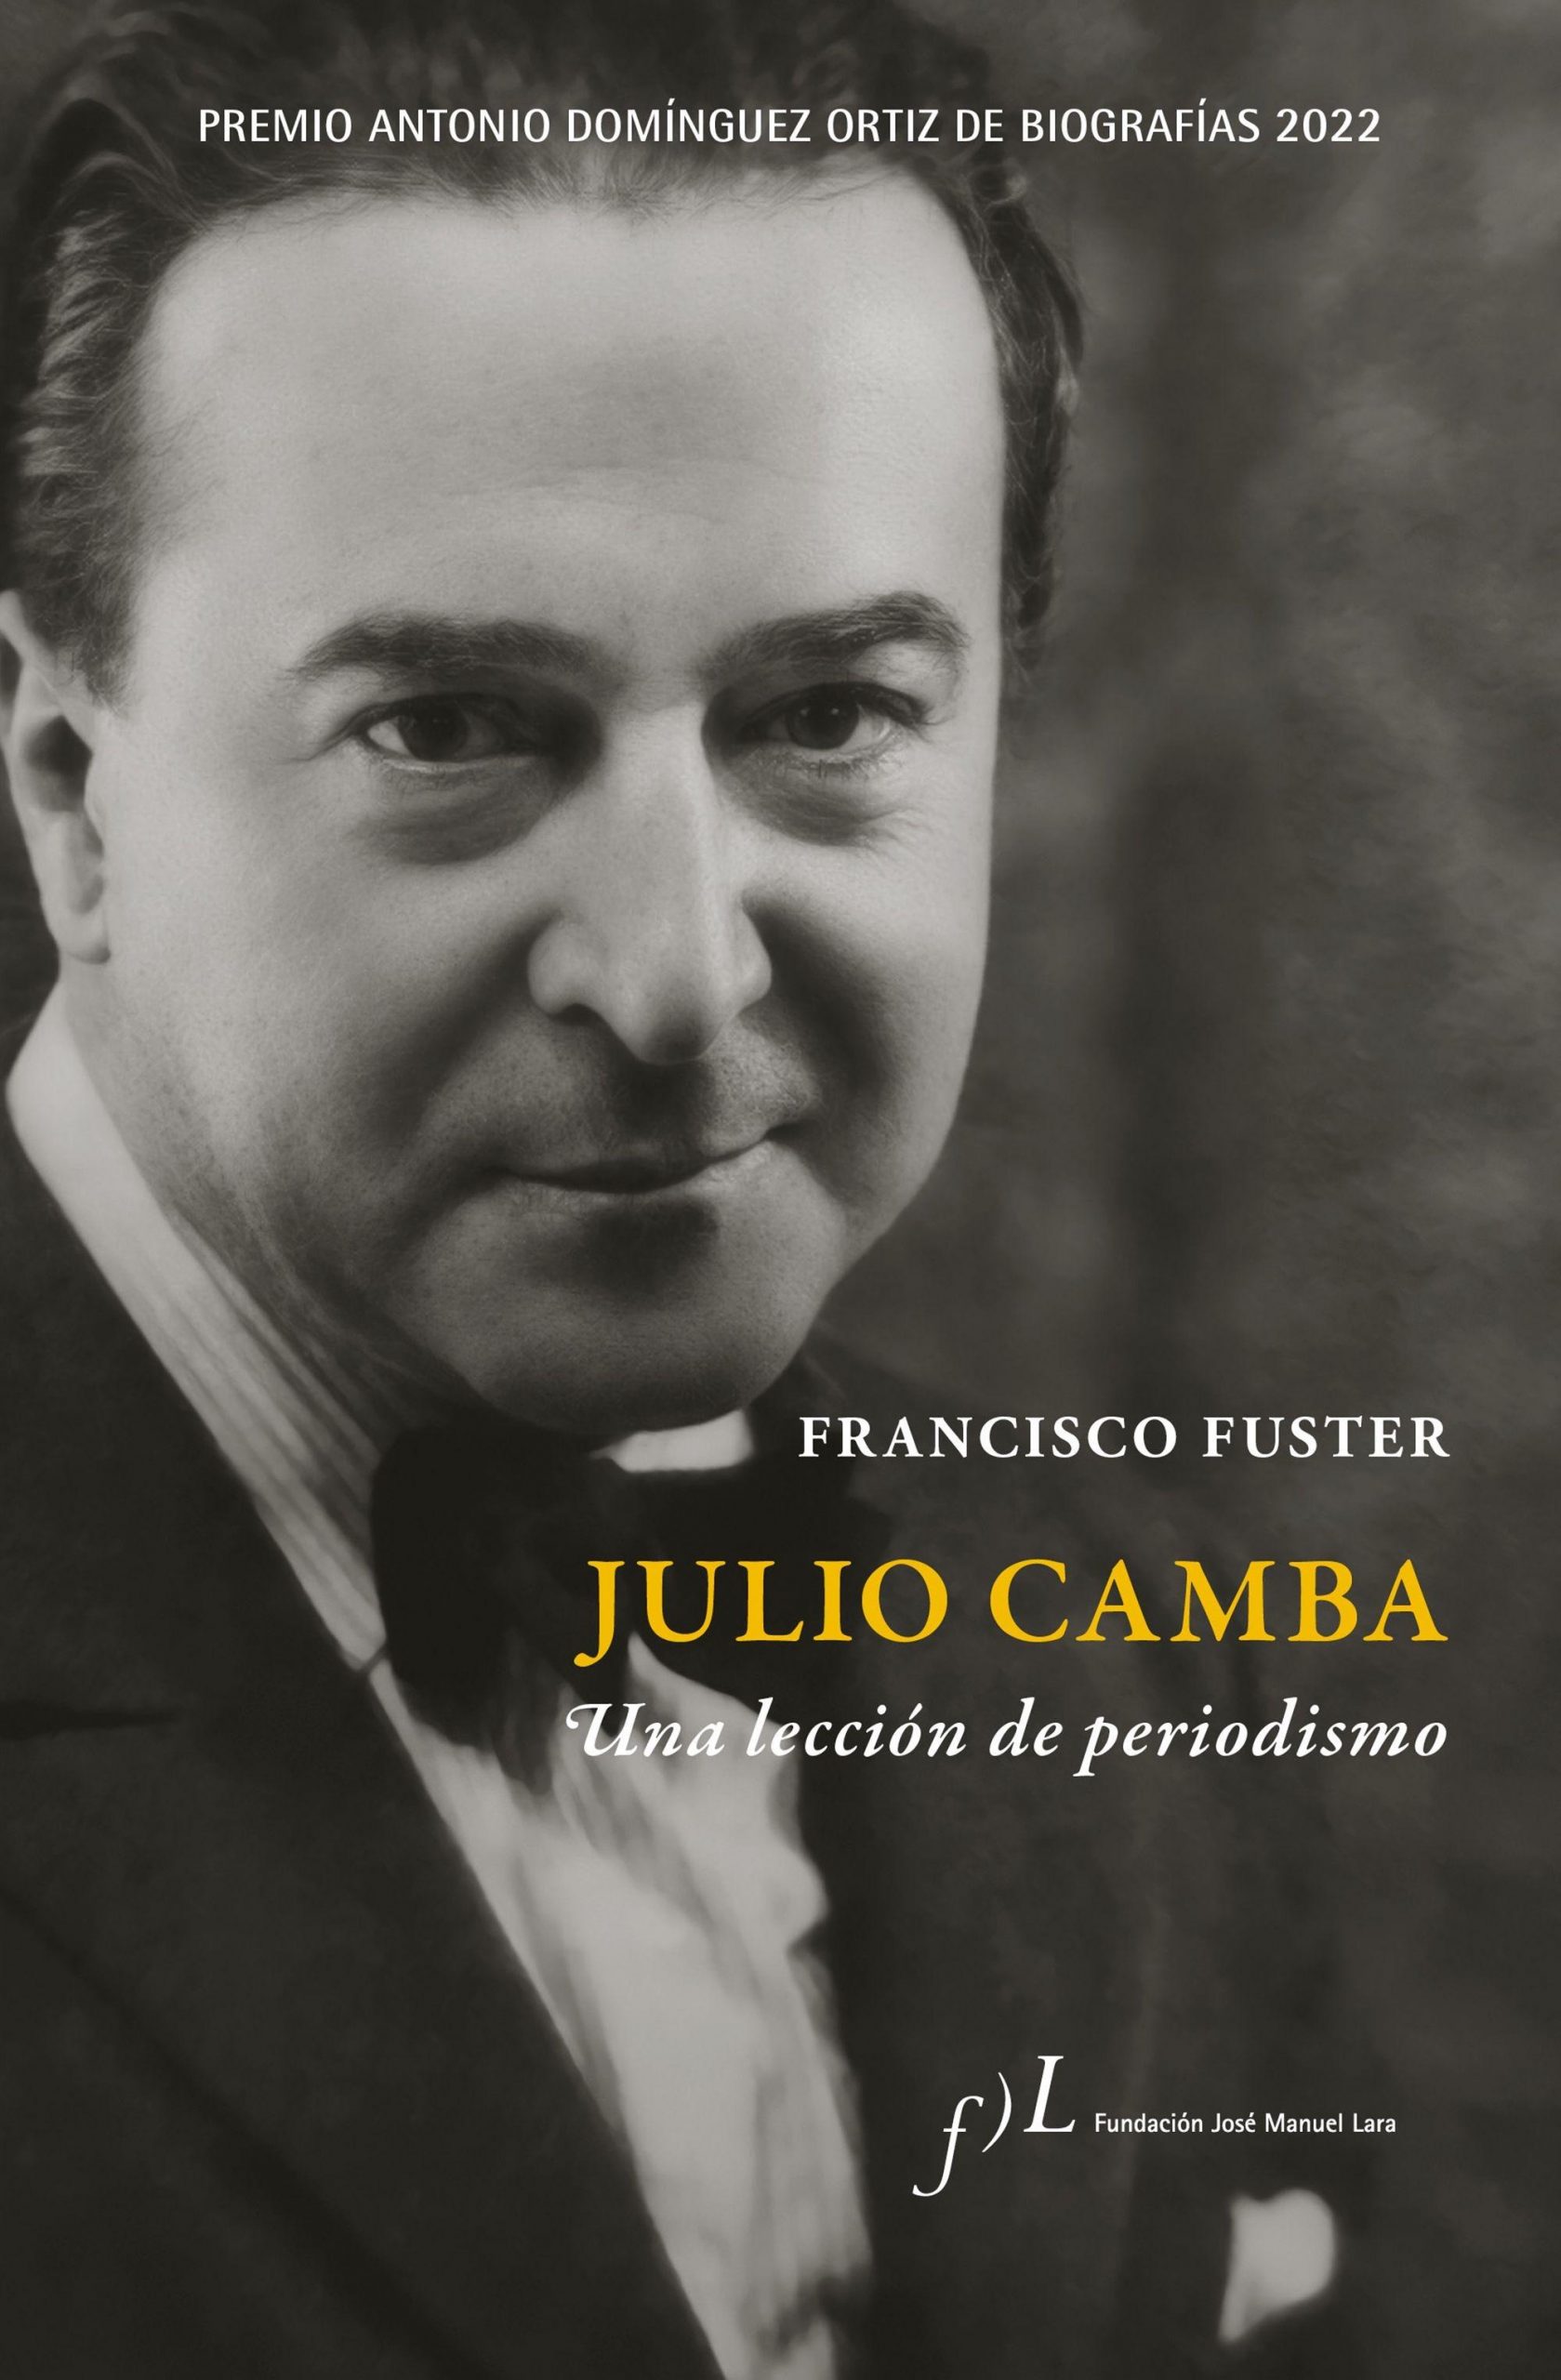 Julio Camba, lecciones de periodismo